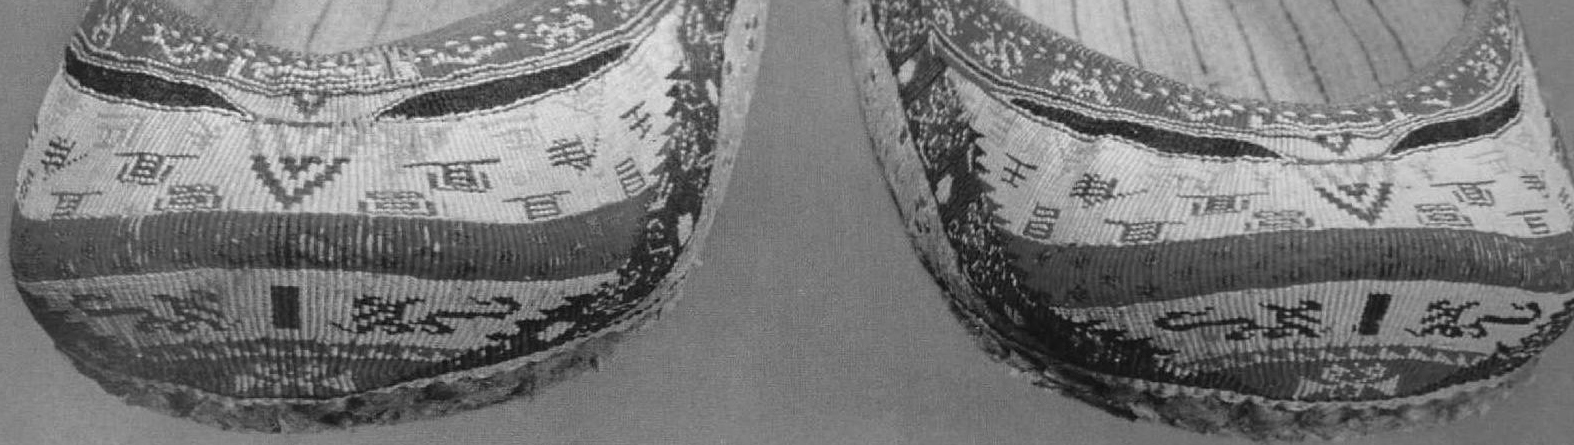 魏晋南北朝的丝织装饰图案